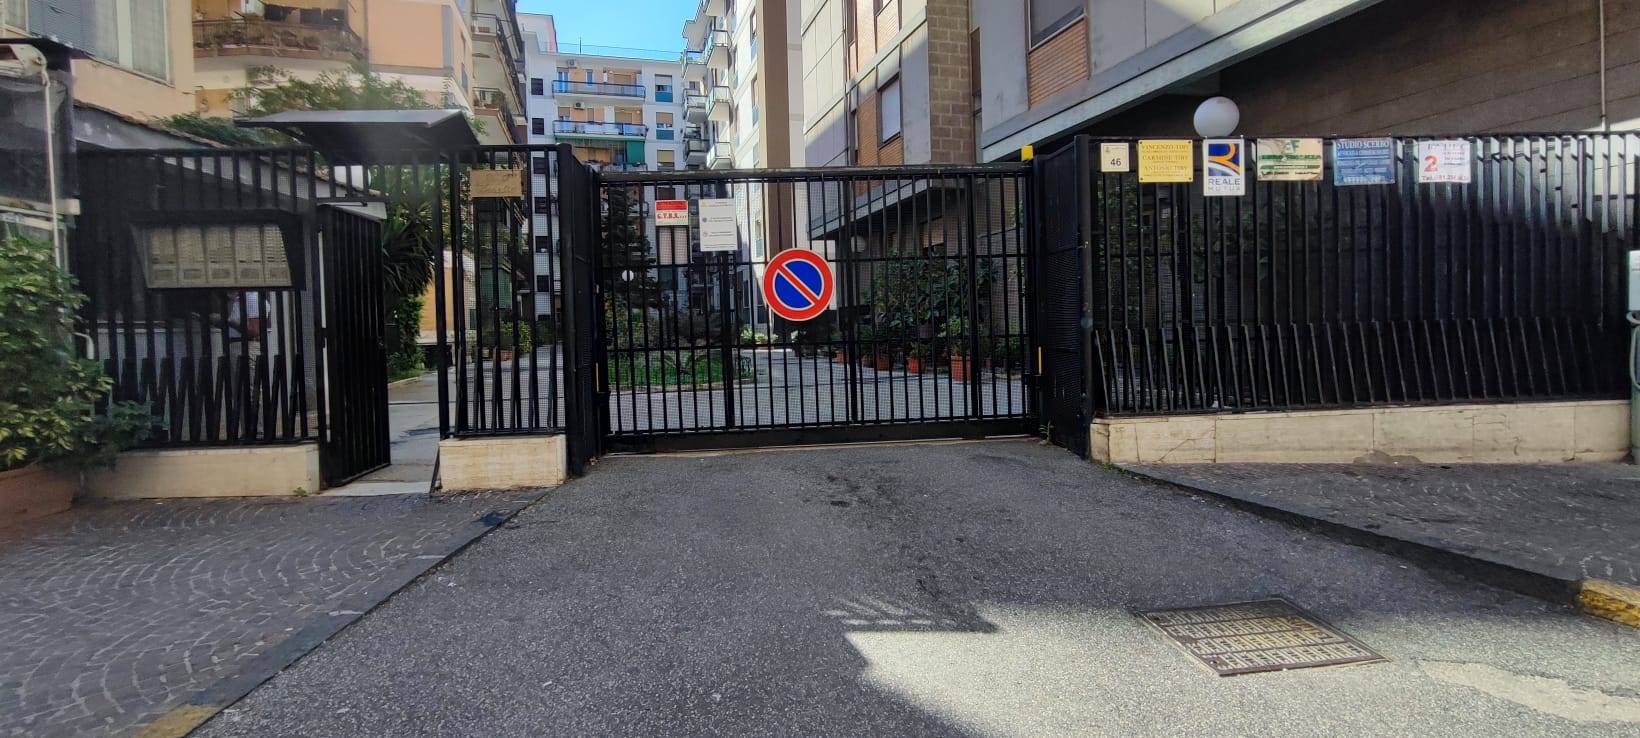 Appartamento in vendita a San Giorgio a Cremano, 2 locali, zona Località: CENTRO VESUVIANA, prezzo € 169.000 | CambioCasa.it